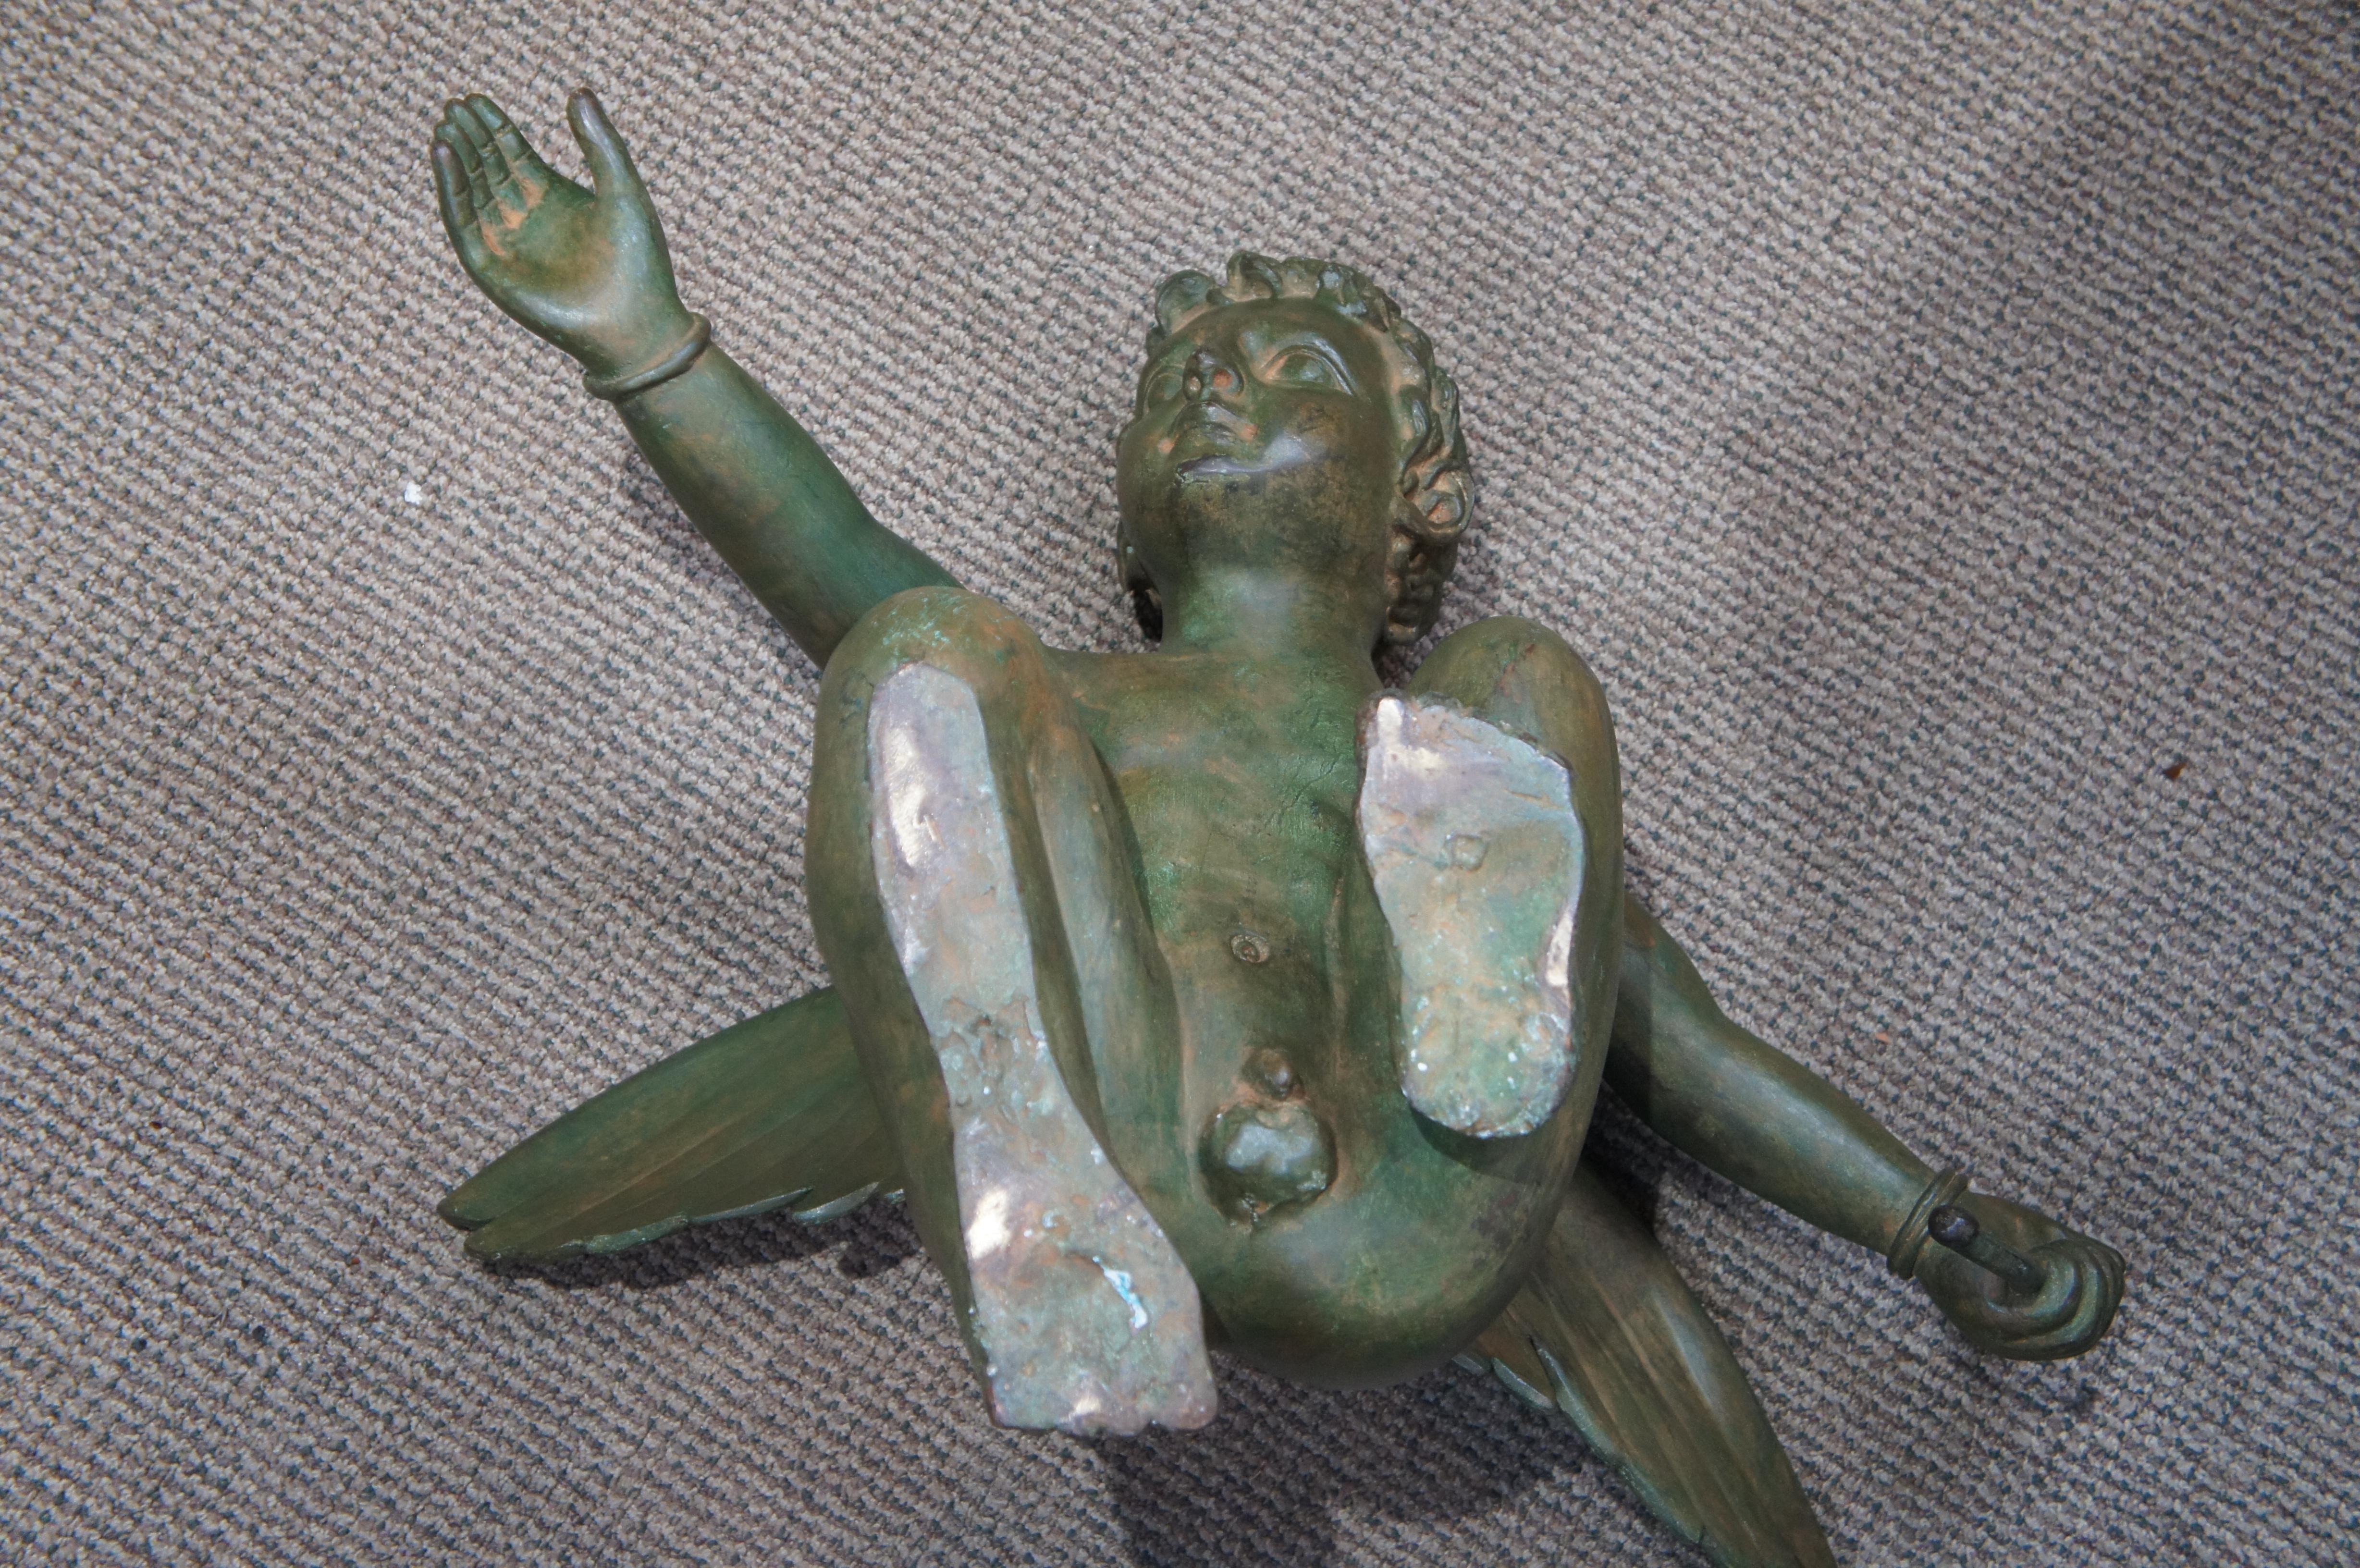 Nishan Toor Large Verdigris Bronze Winged Nude Cherub Putti Sculpture Statue 28